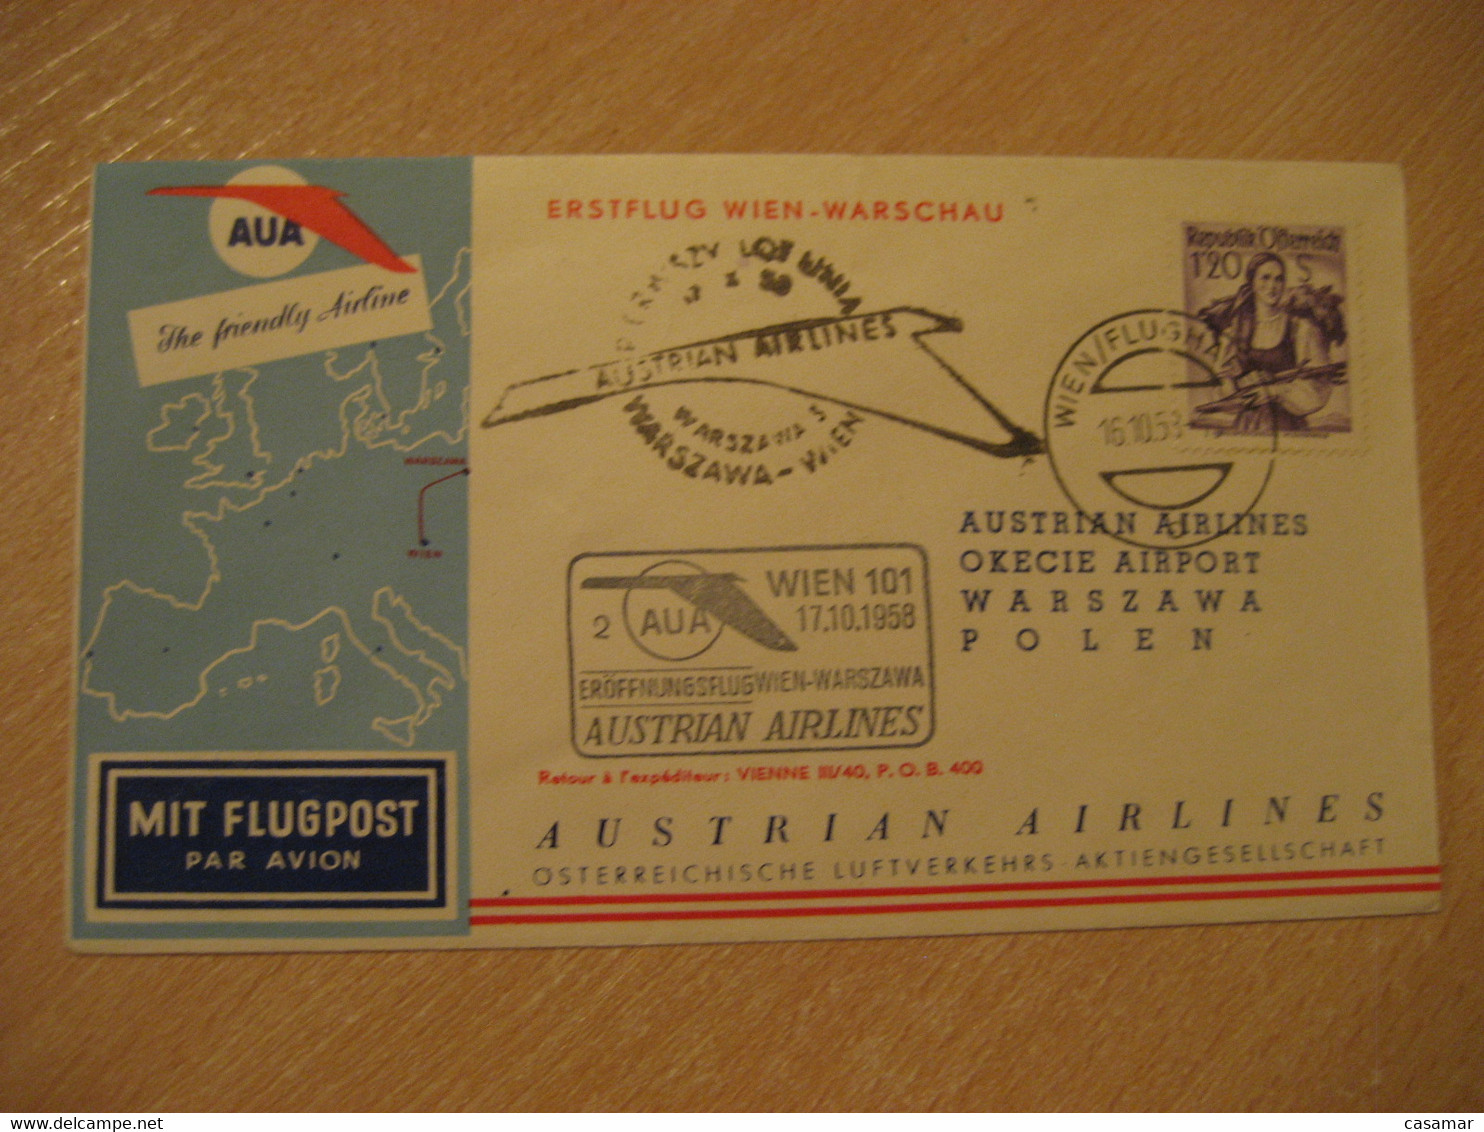 WARSZAWA Warsaw Wien 1958 AUA Austrian Airlines Airline First Flight Cancel Cover POLAND AUSTRIA - Vliegtuigen